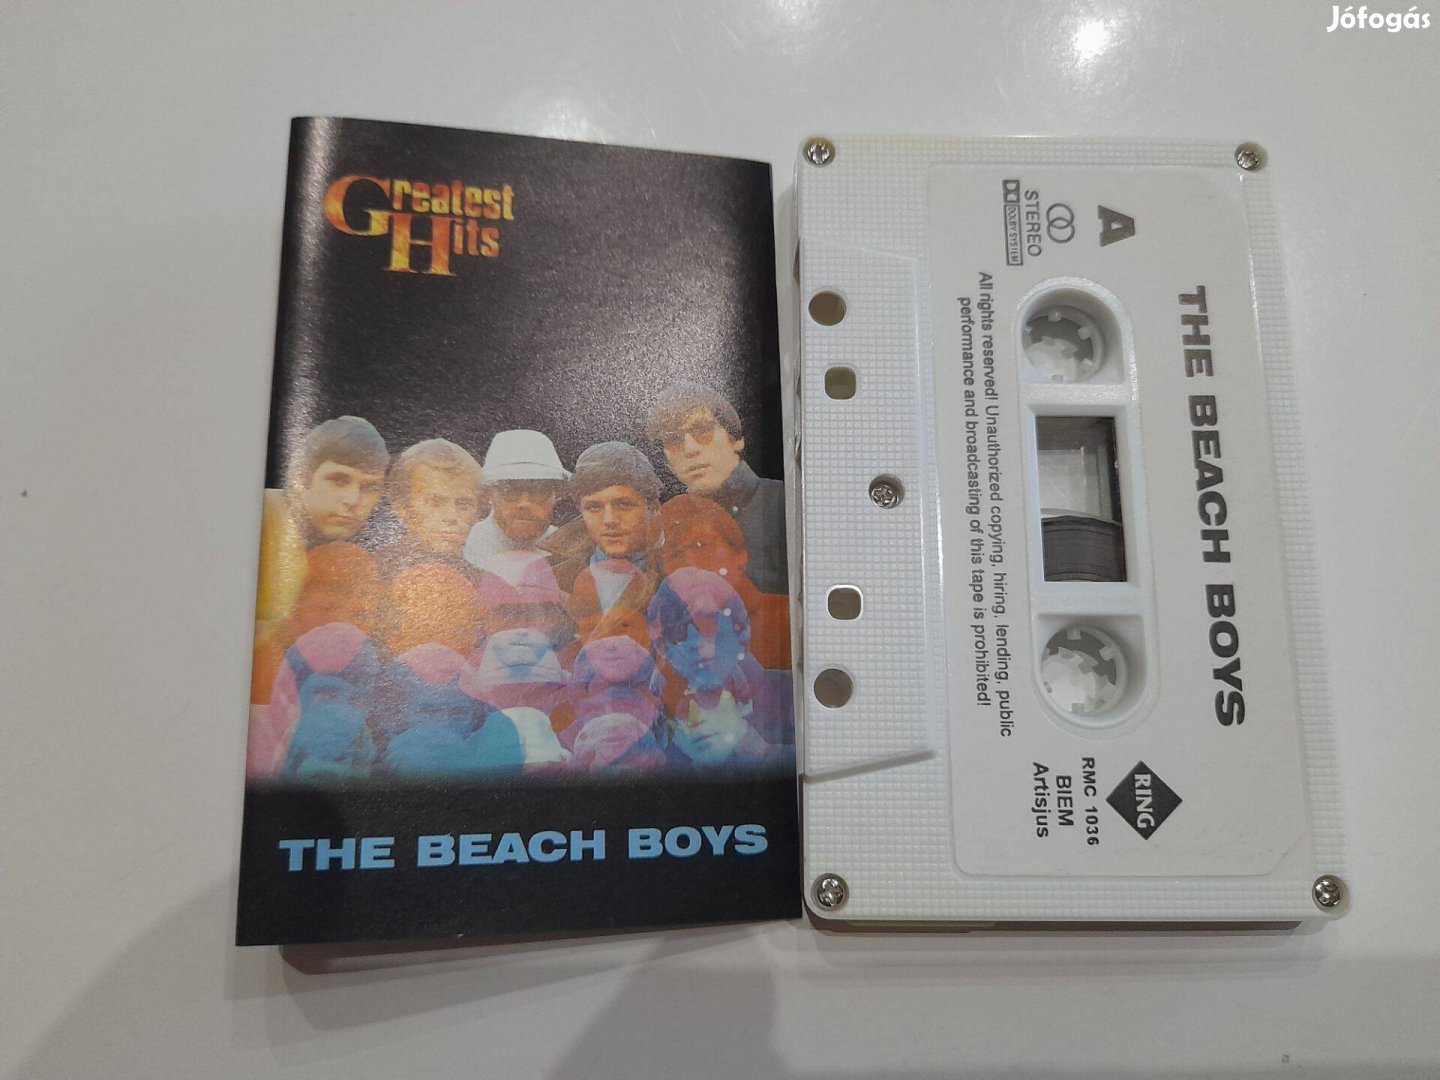 The Beach Boys kazetta